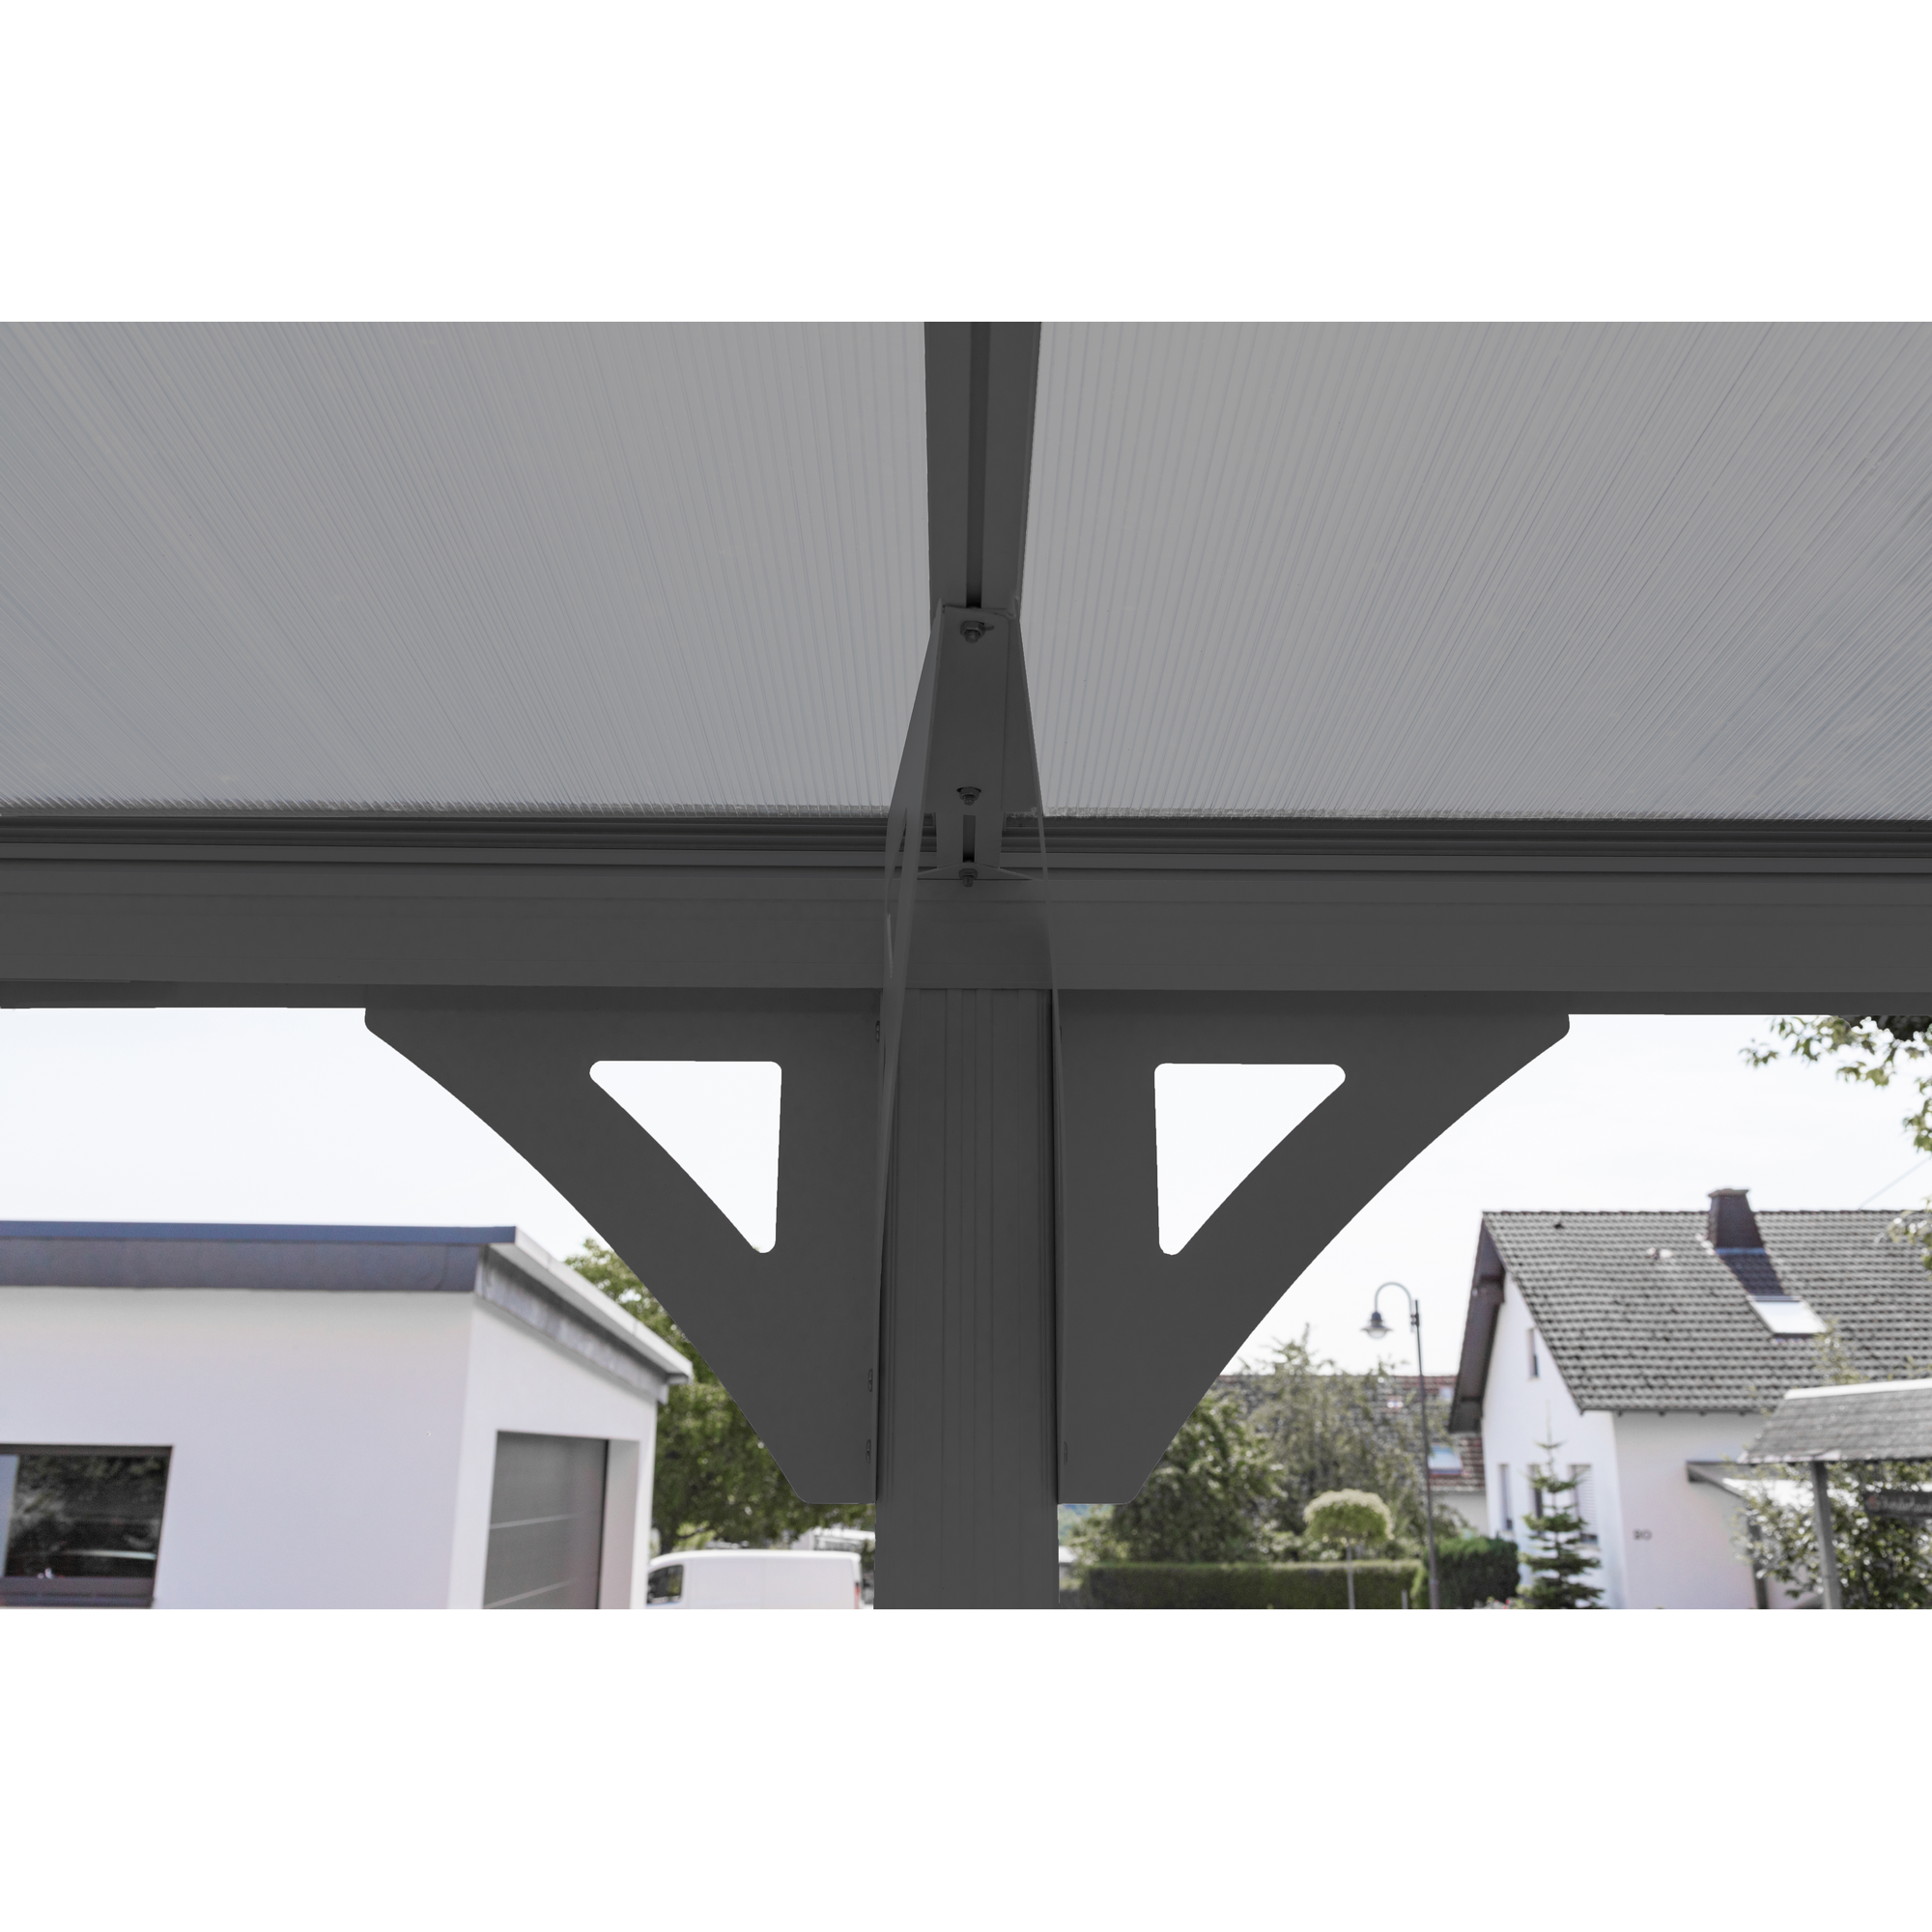 Carport 'Bergen' mit Runddach anthrazit Aluminium 505 x 300 x 220 cm + product picture